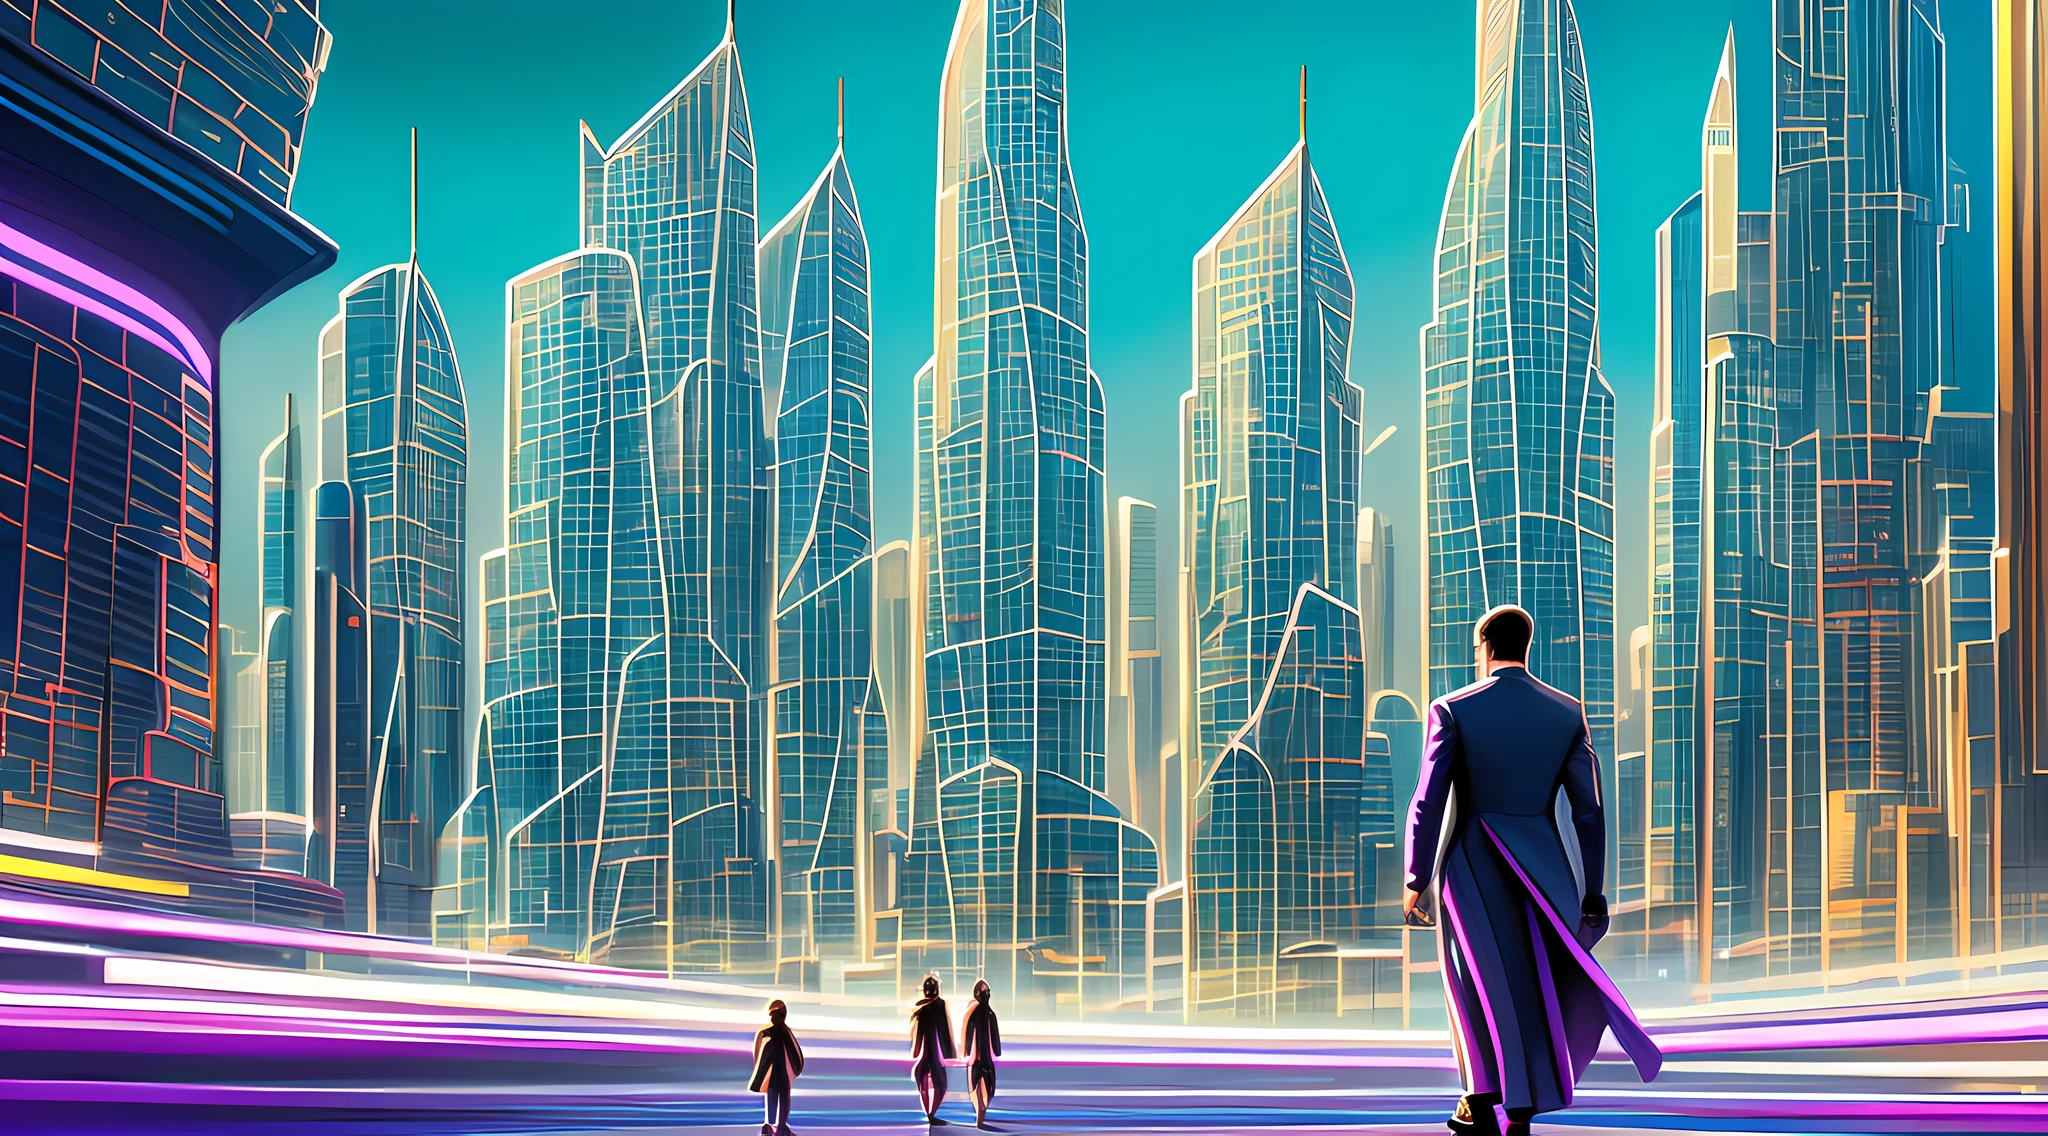 一幅描绘未来城市景观的油画, 摩天大楼和飞行器占据了整个画面. 色彩明亮而鲜艳, 带有蓝色色调, 绿色的, 紫色占据主导地位. 在前景中, 一群人走向一个巨人, 发光的金字塔.